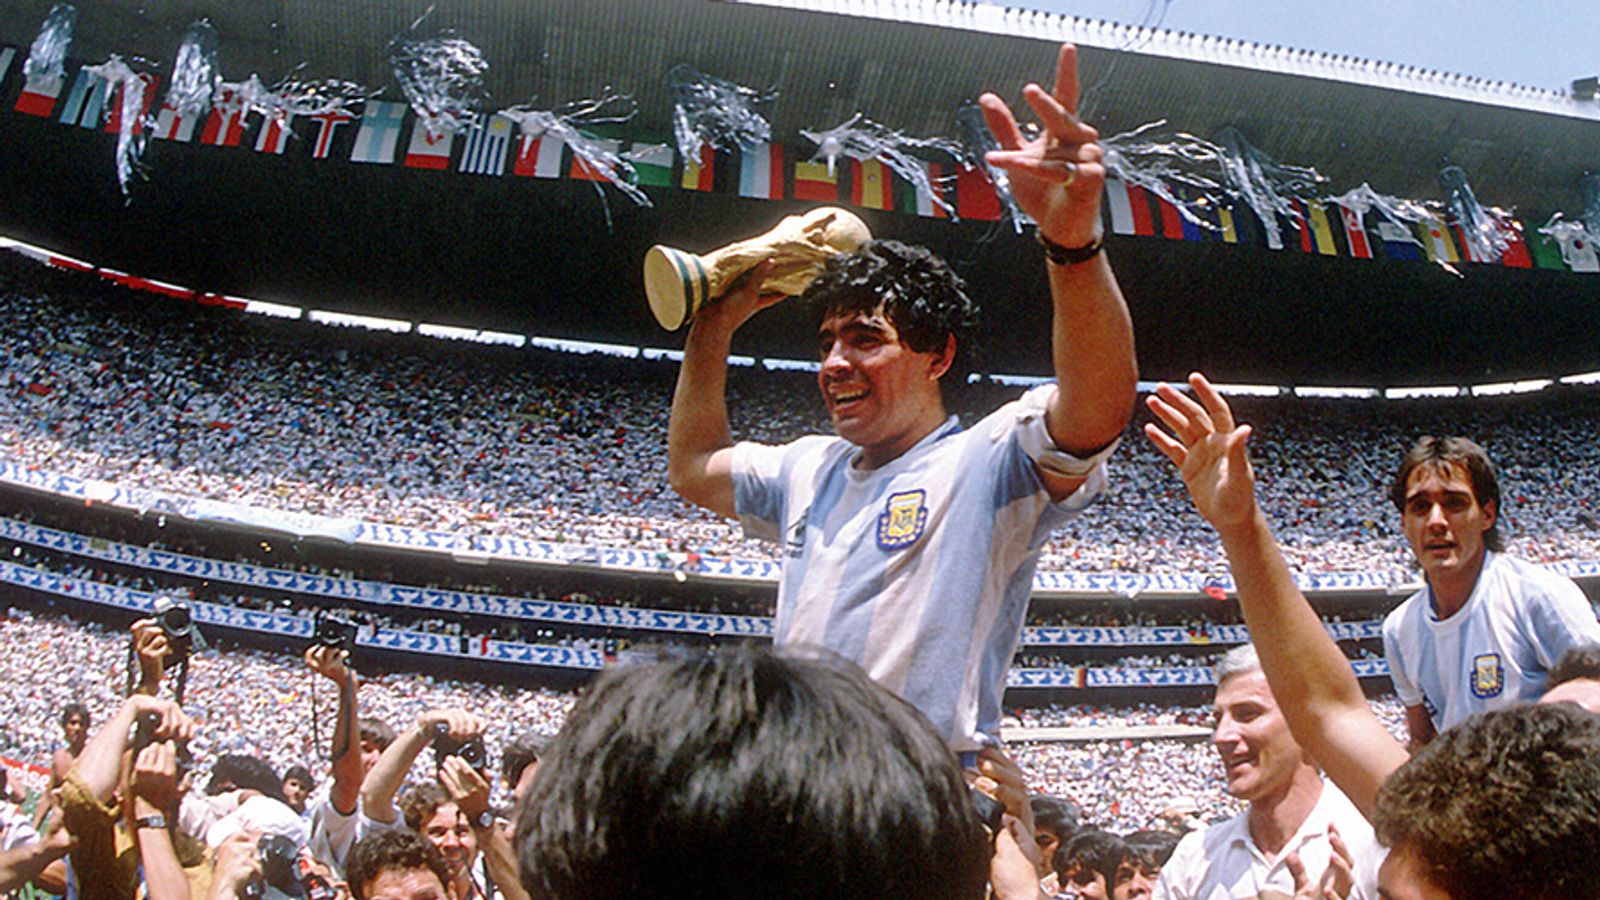 Fußball Argentinien Trikot von Diego Maradona im Museum ausgestellt Fußball News Sky Sport